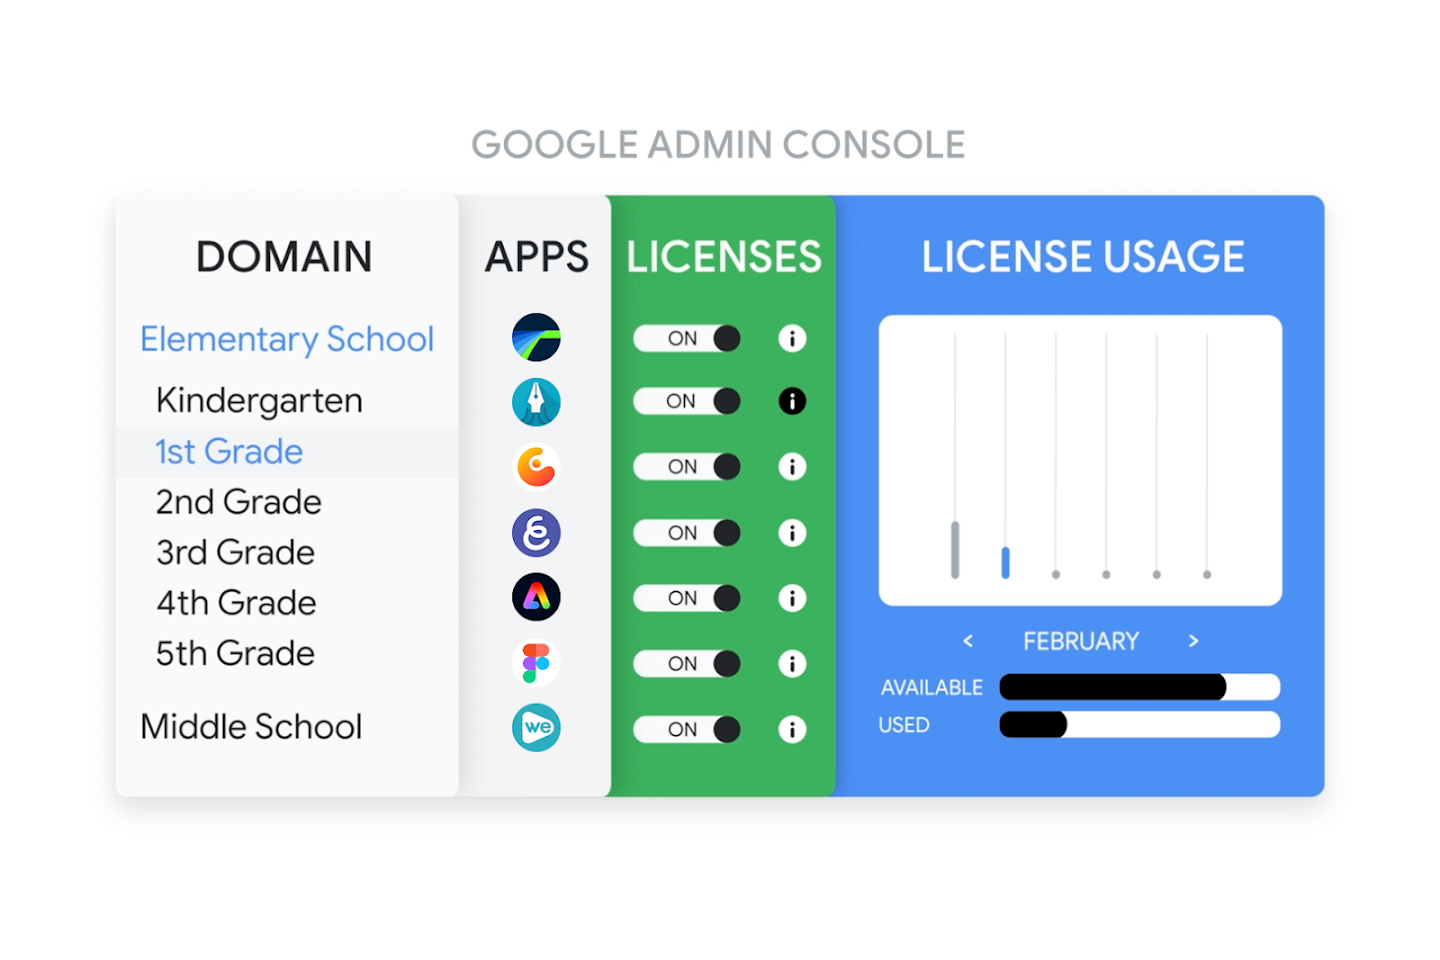 Billede, der viser applicensering i Google Administrationskonsol, hvor apps er ved at blive provisioneret til en elev